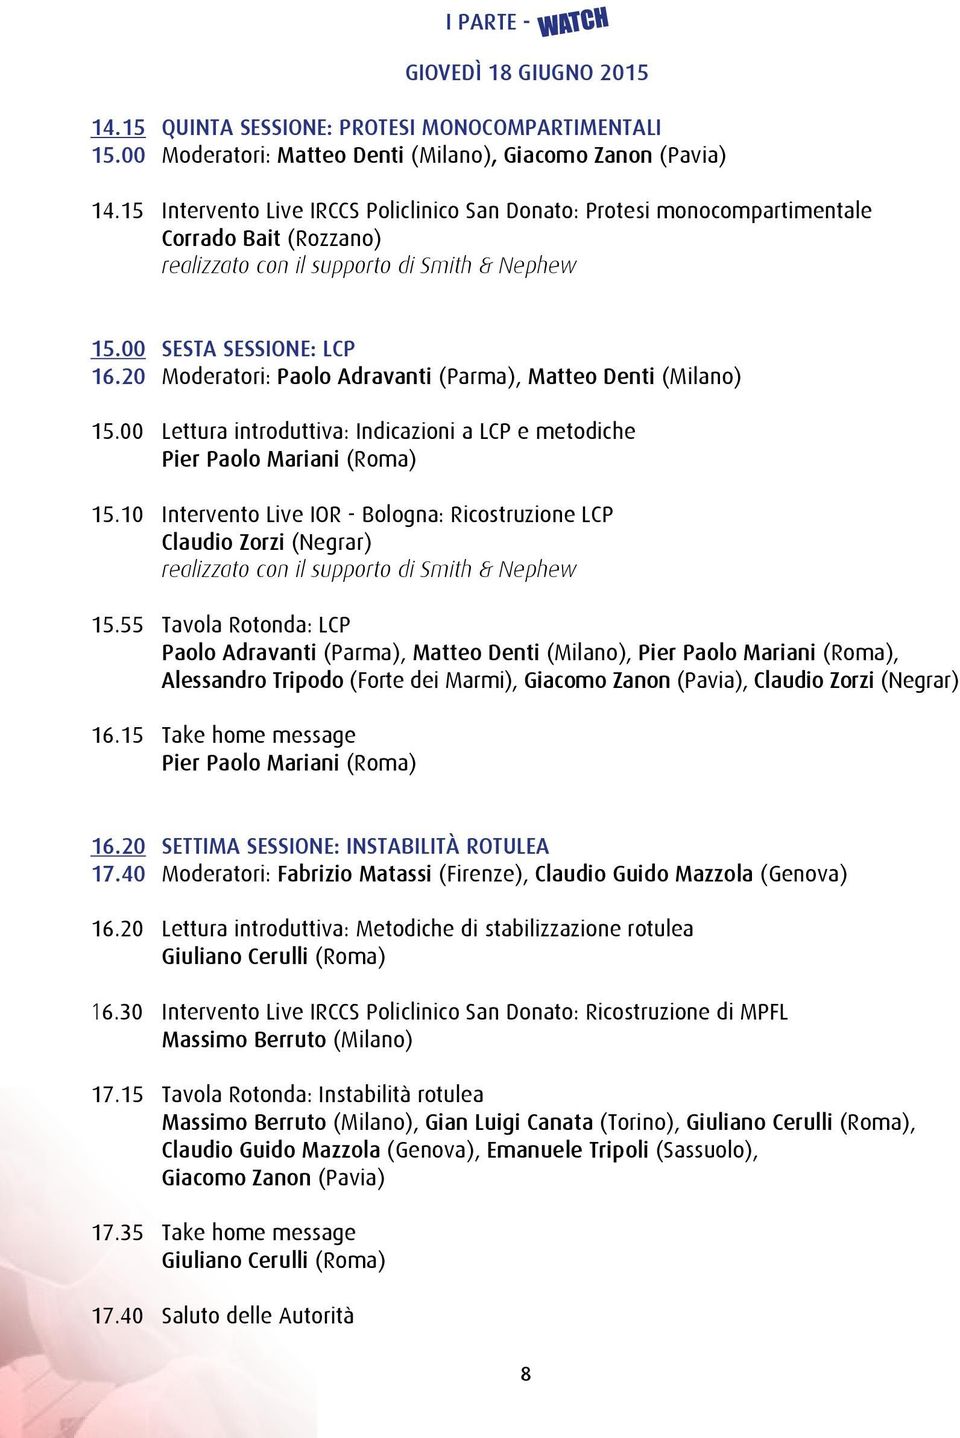 20 Moderatori: Paolo Adravanti (Parma), Matteo Denti (Milano) 15.00 Lettura introduttiva: Indicazioni a LCP e metodiche Pier Paolo Mariani (Roma) 15.